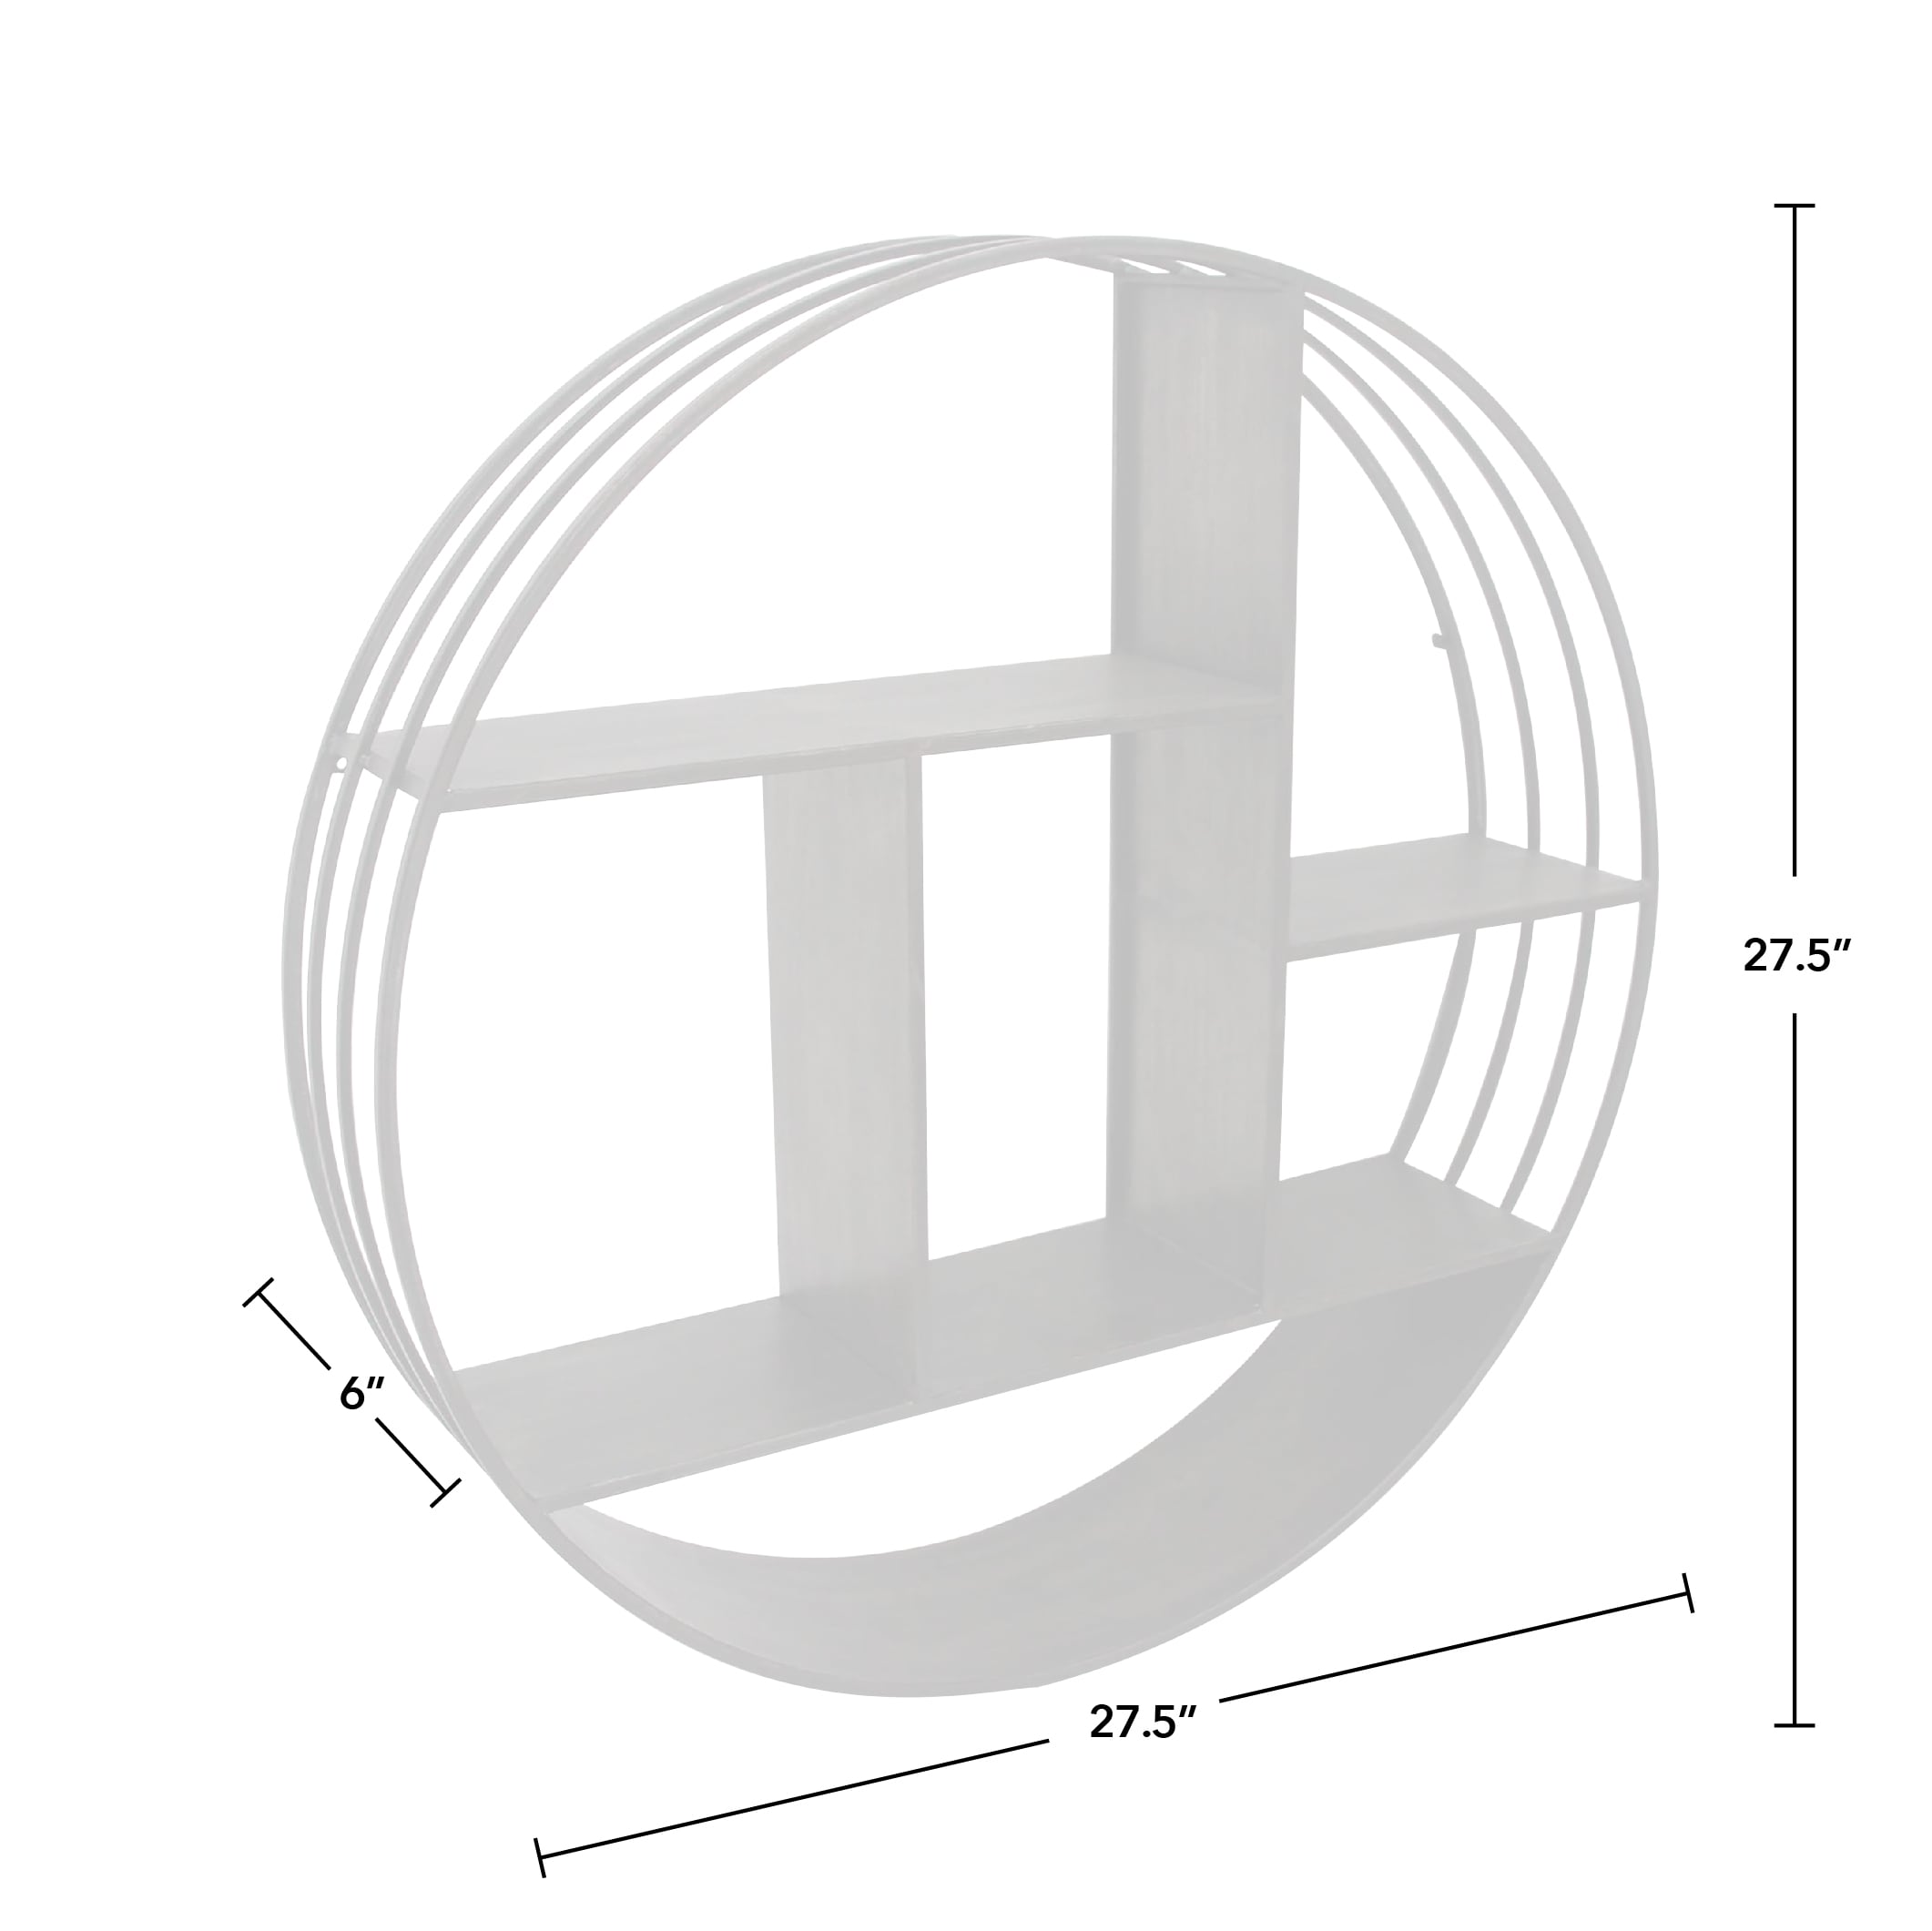 FirsTime 27.5-in L x 6-in D x 27.5-in H Metallic Gray Metal Circle